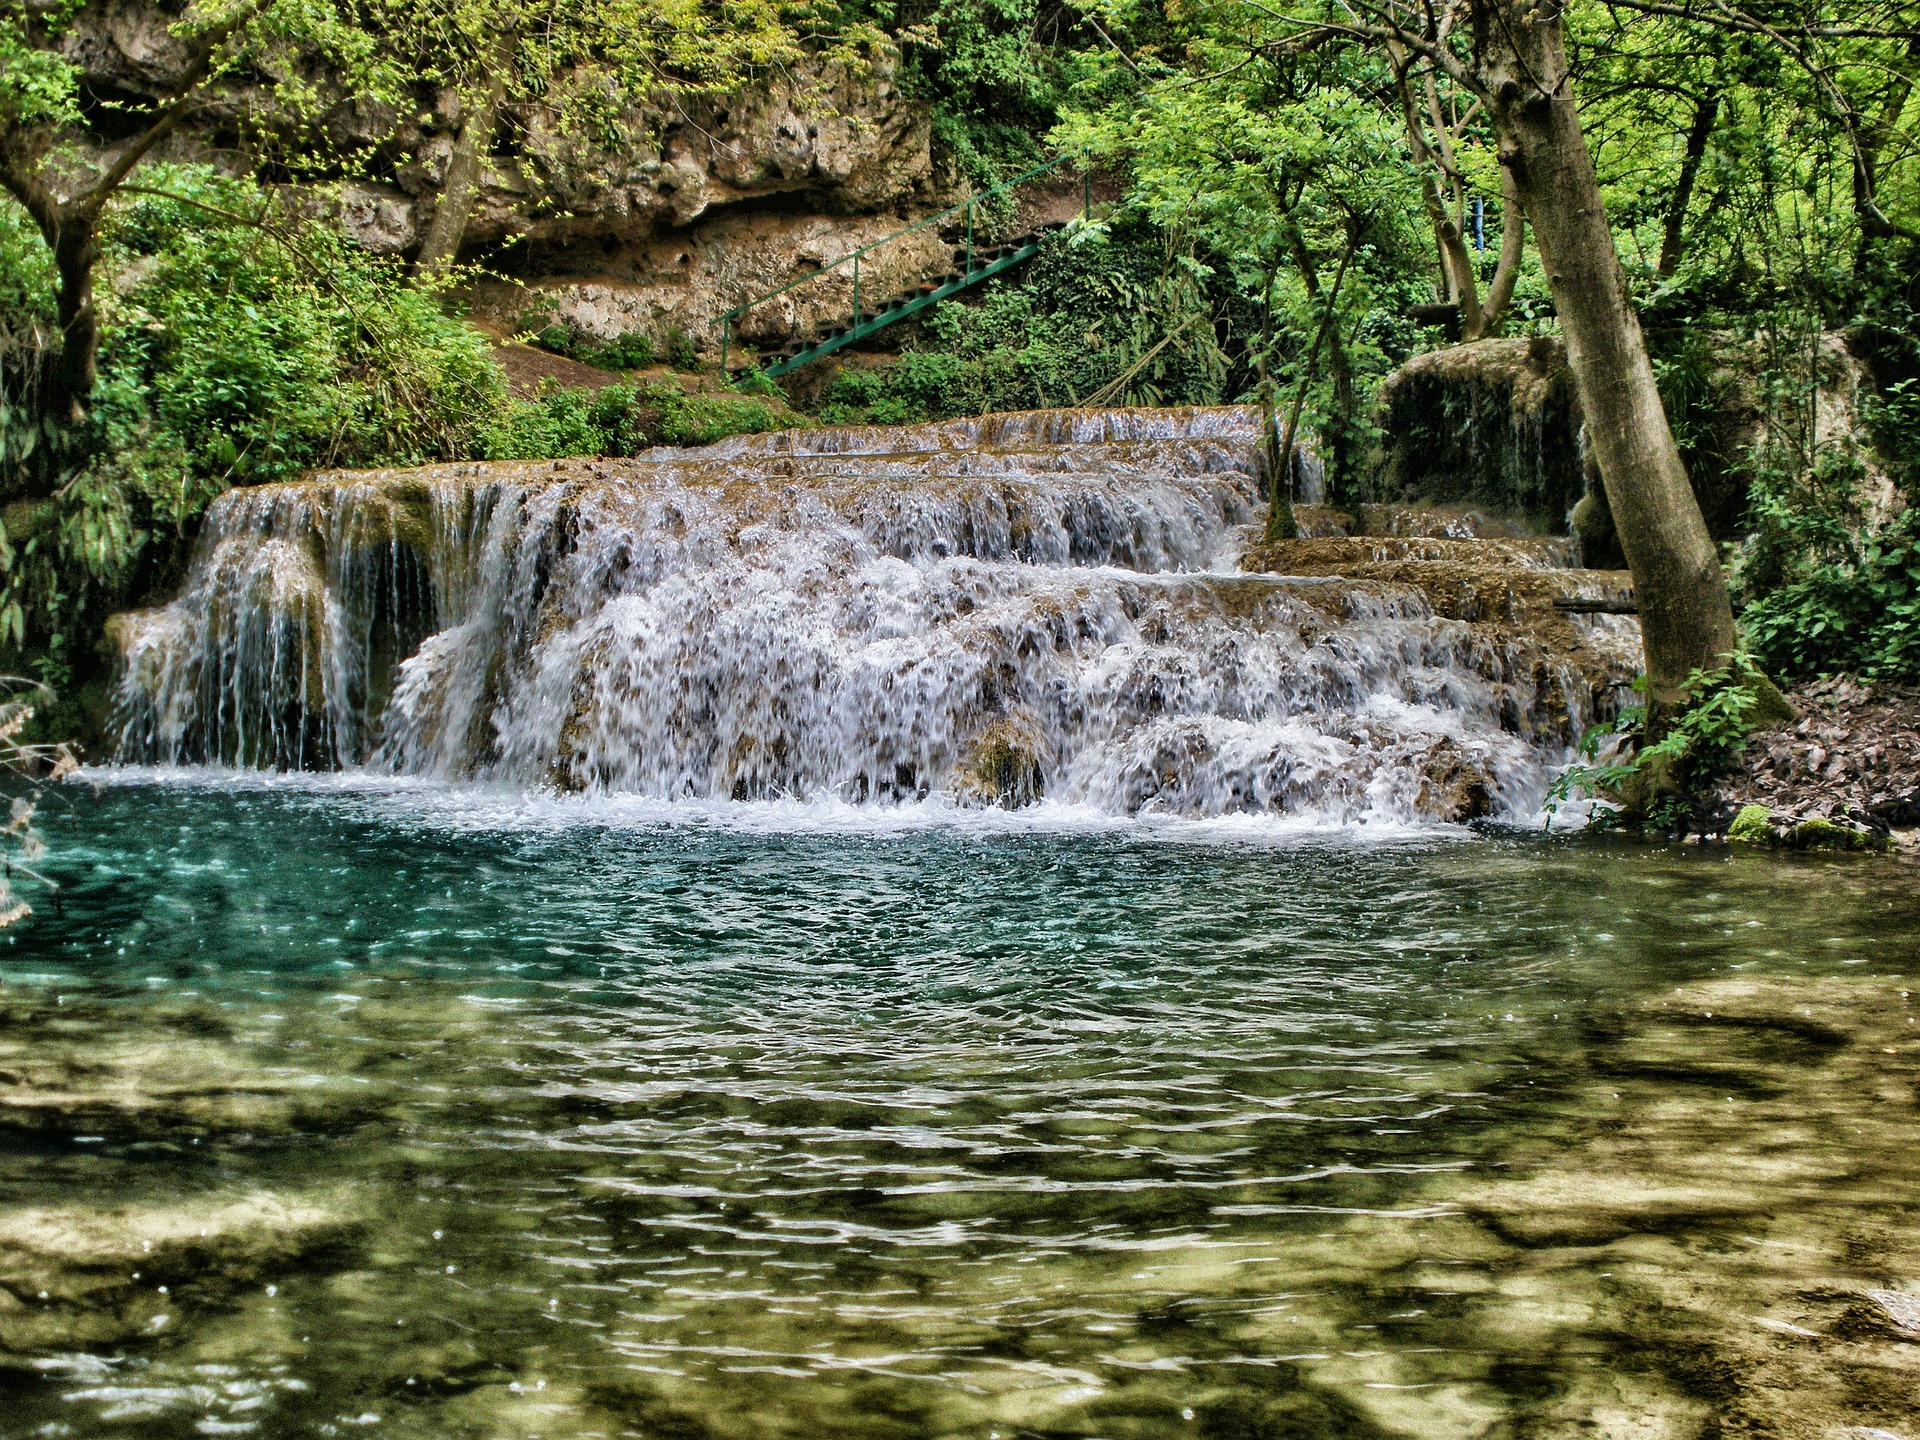 Krushuna waterfall